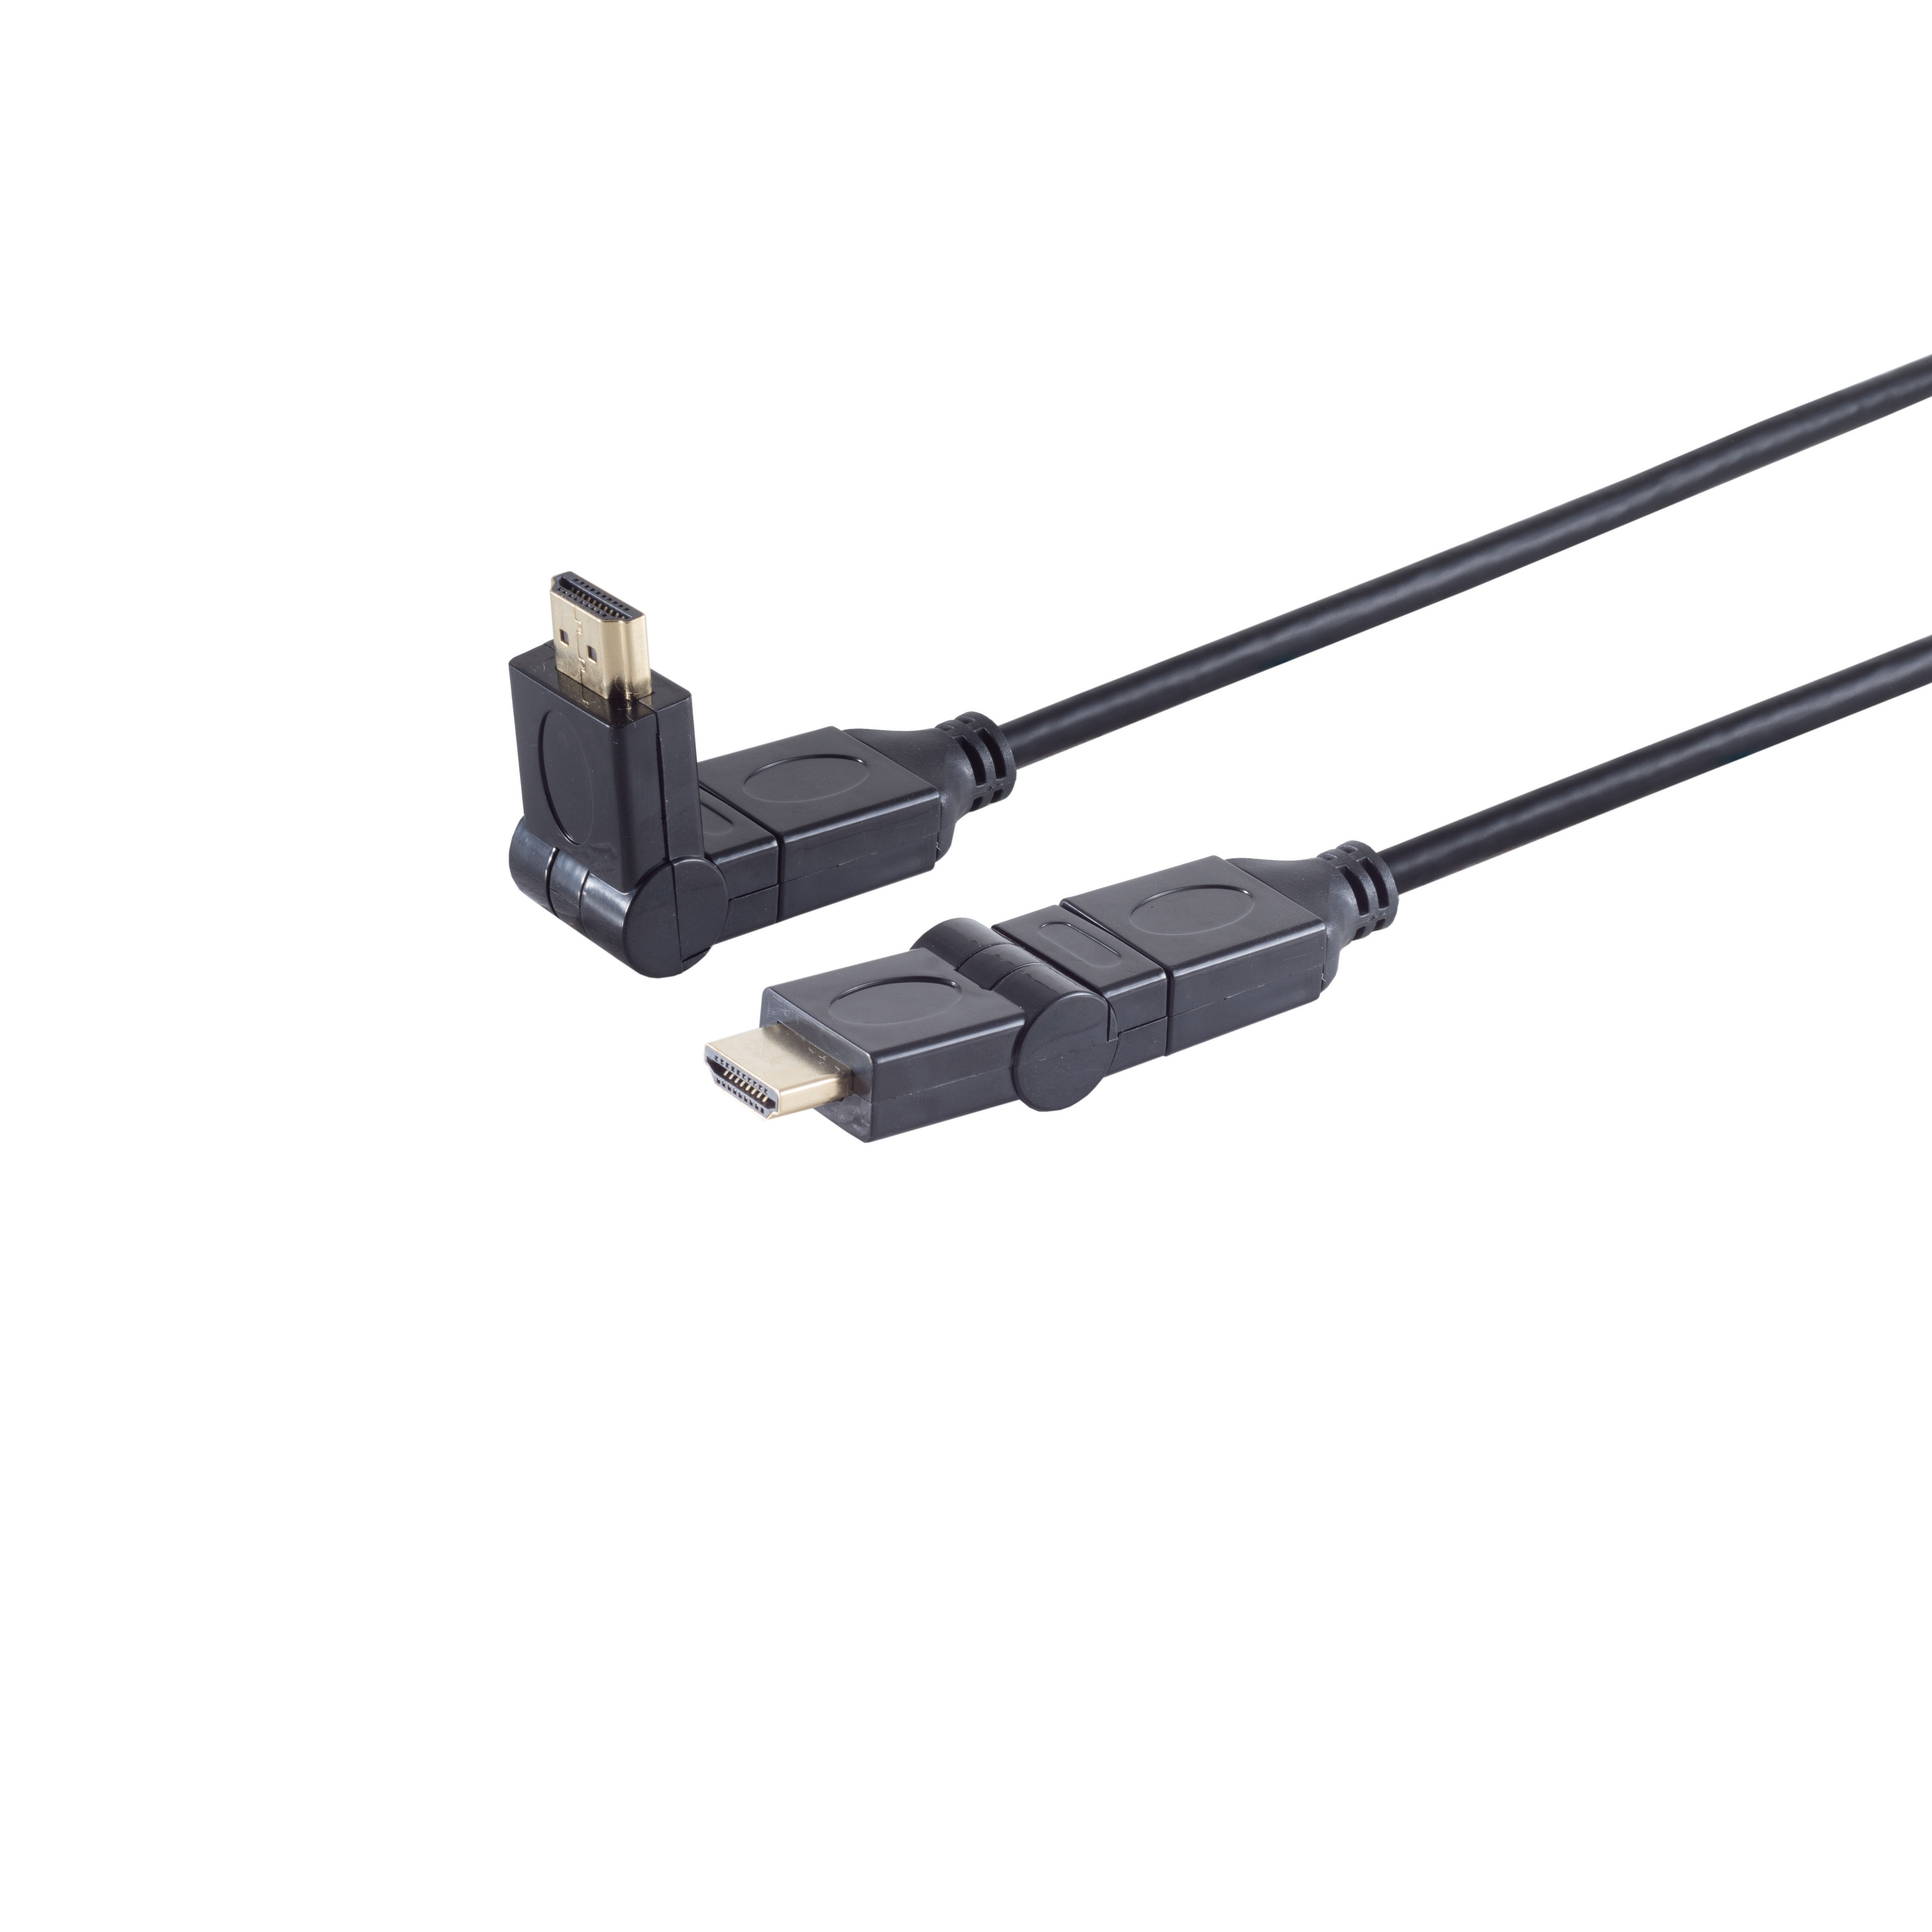 S/CONN A-Stecker CONNECTIVITY HEAC HDMI winkelbar Kabel HDMI MAXIMUM A-Stecker/HDMI 5m